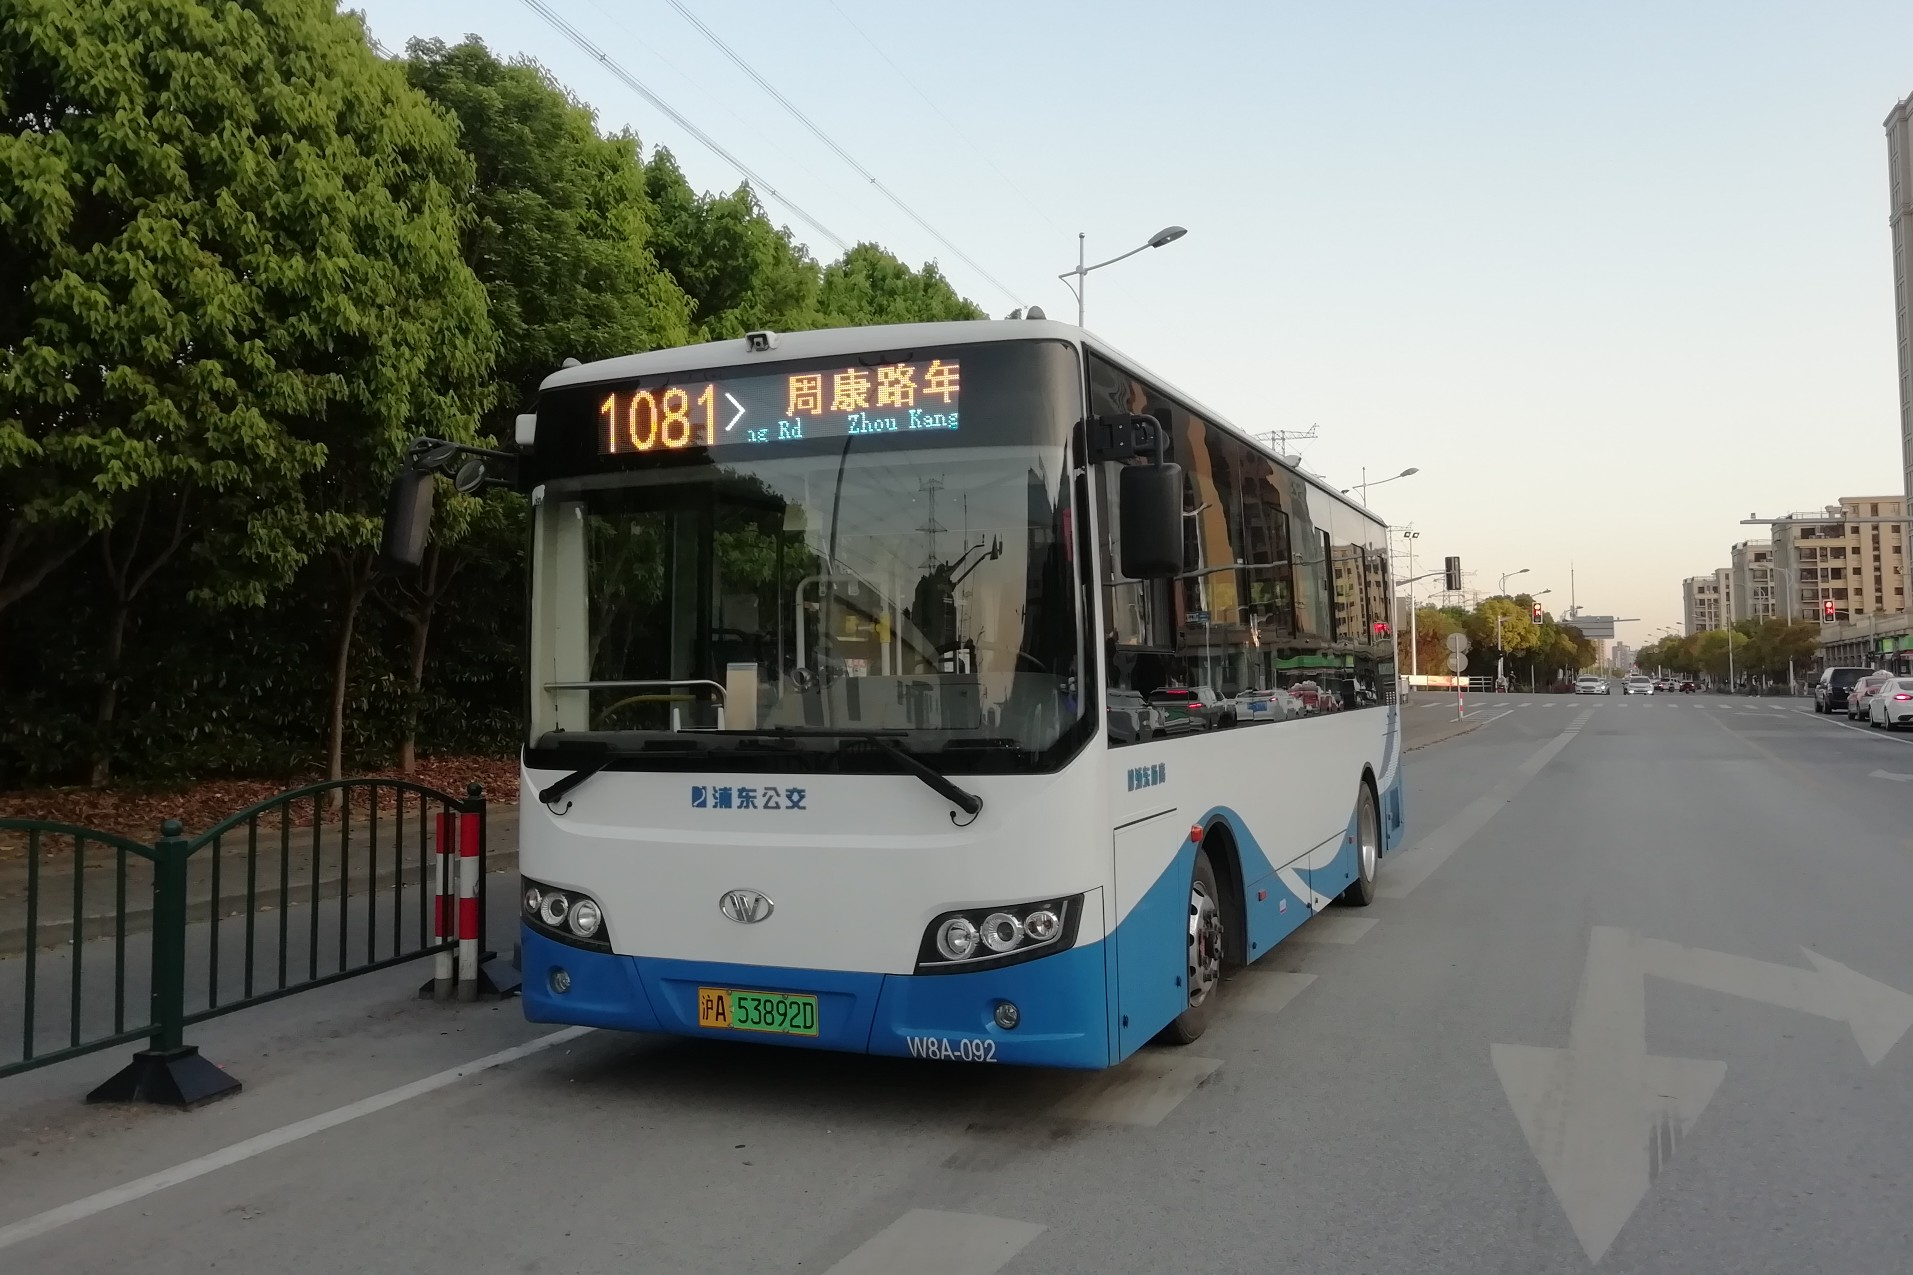 上海浦东61路(原1081路)公交车路线